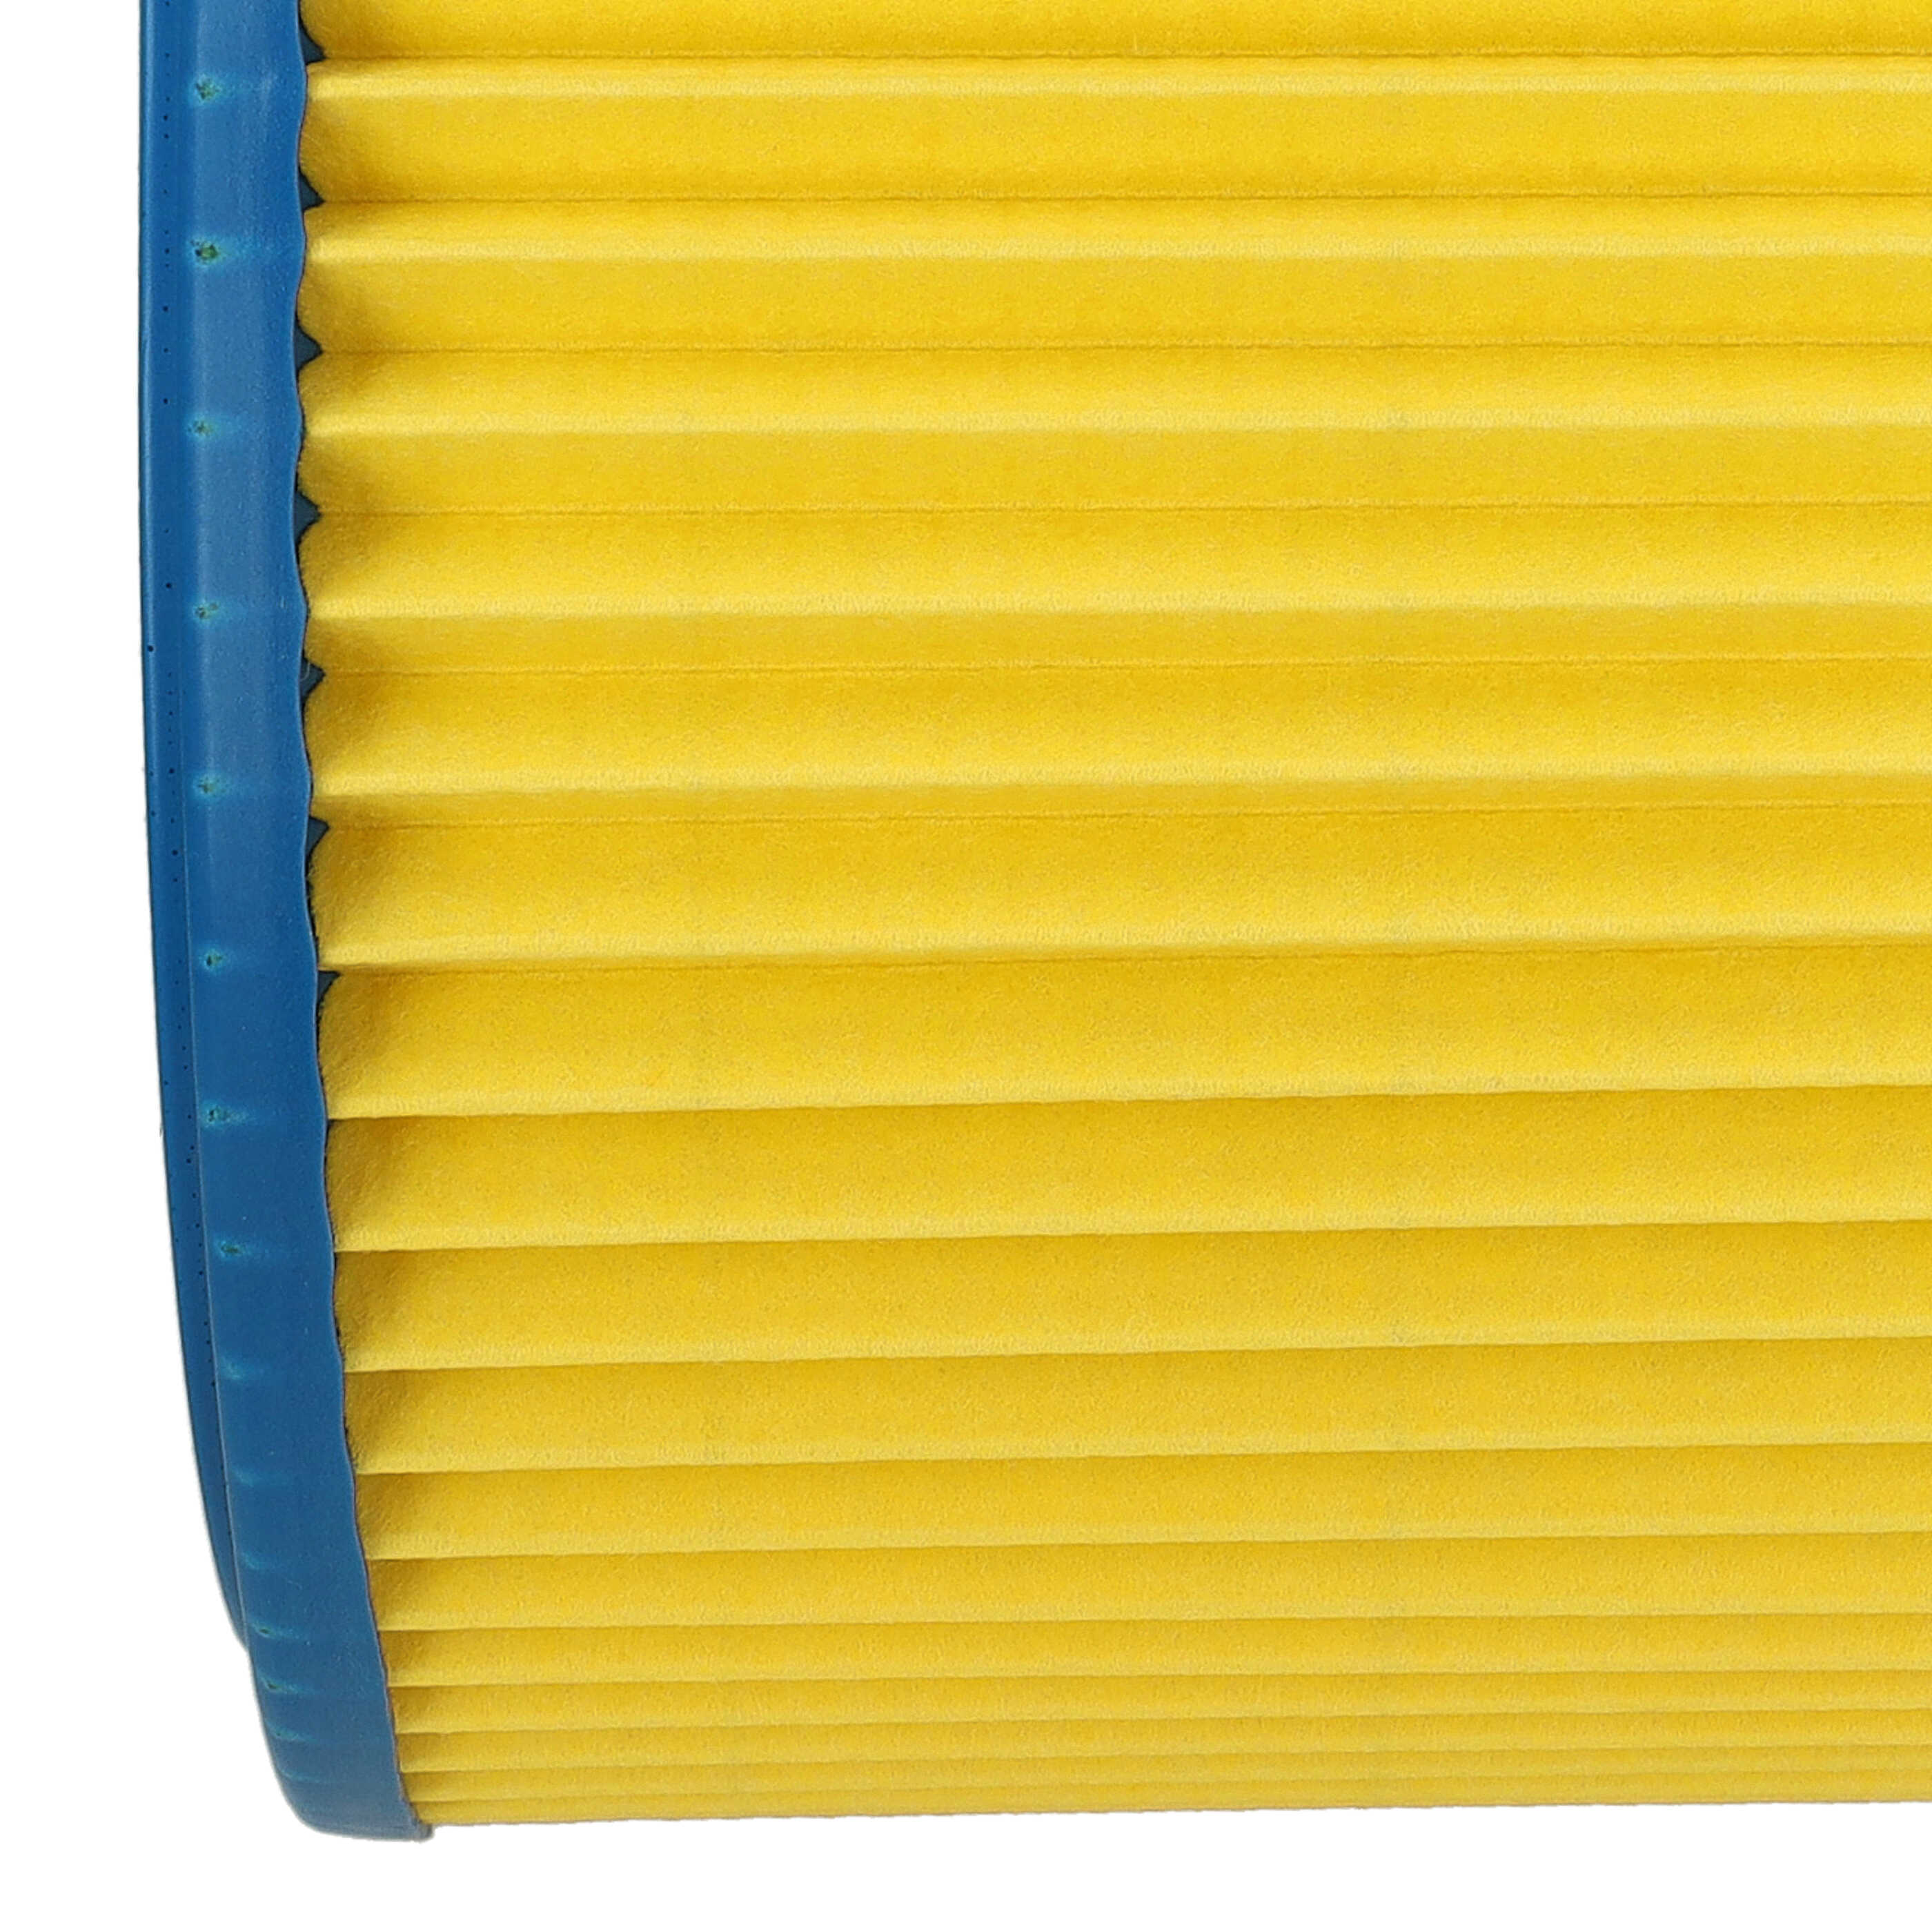 Filtr do odkurzacza LIV zamiennik Einhell 2351110 - wkład filtracyjny, niebieski / żółty